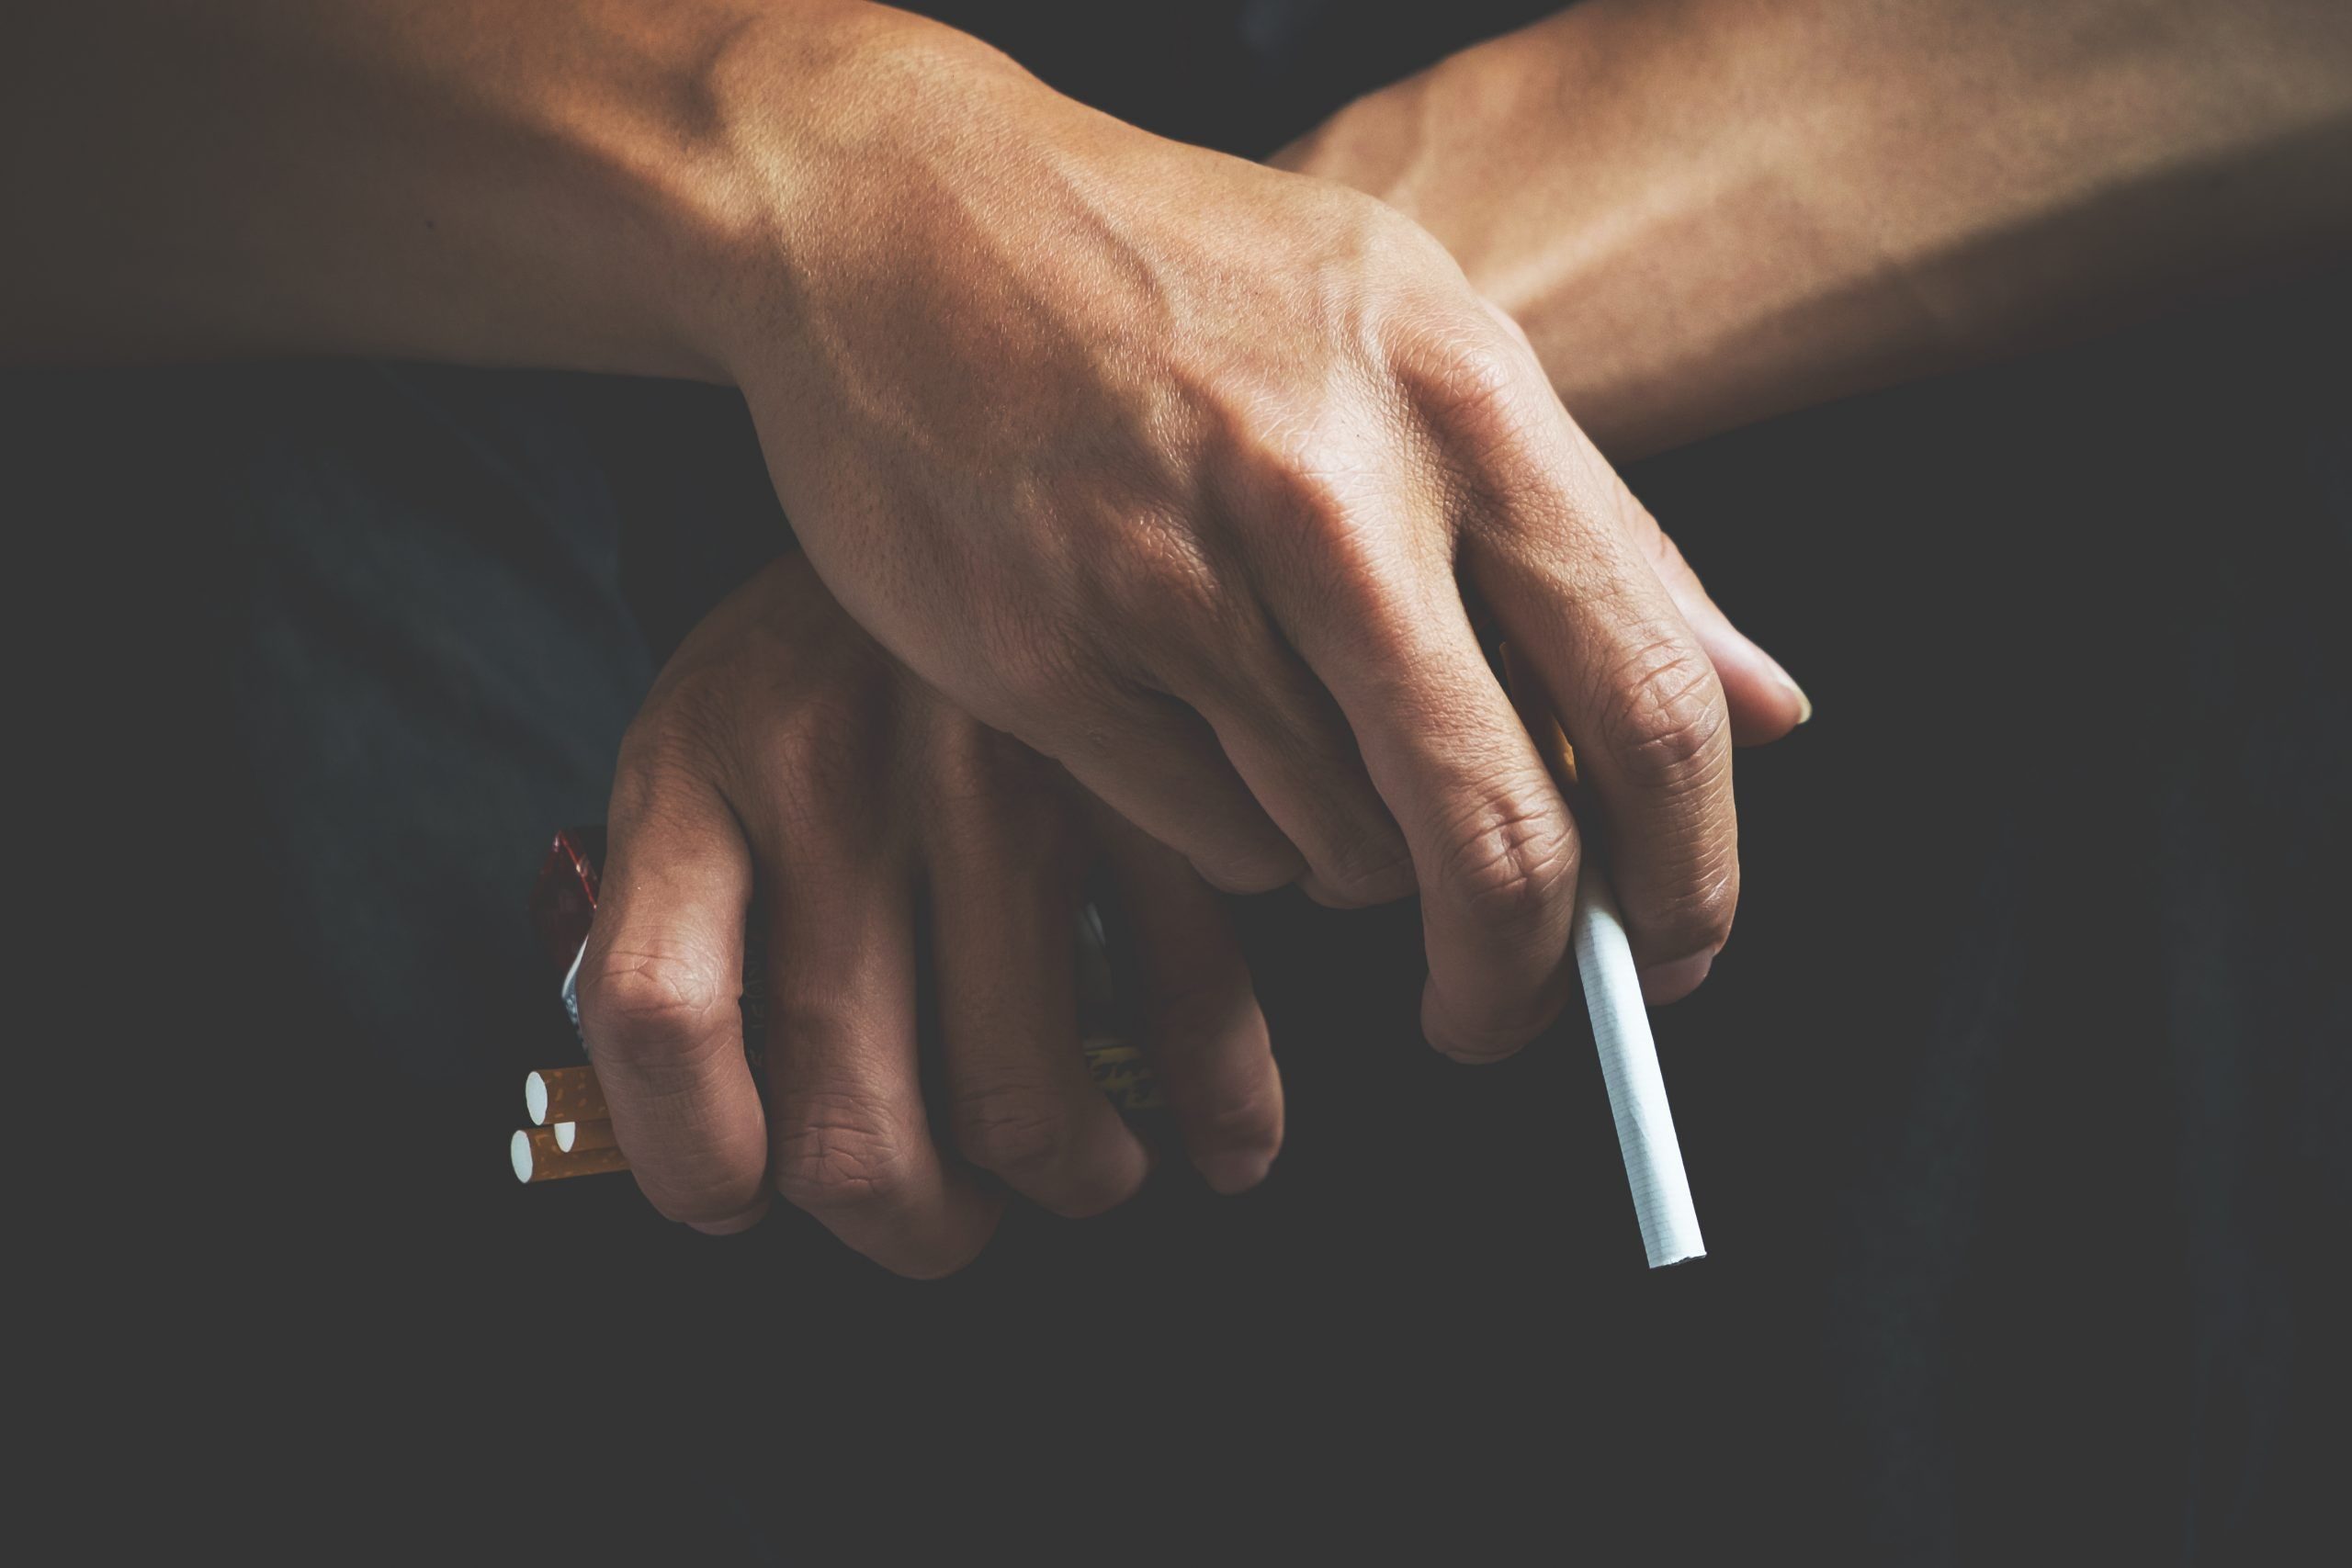 Cigarette addiction. Tobacco nicotine smoke. Unhealthy, danger,